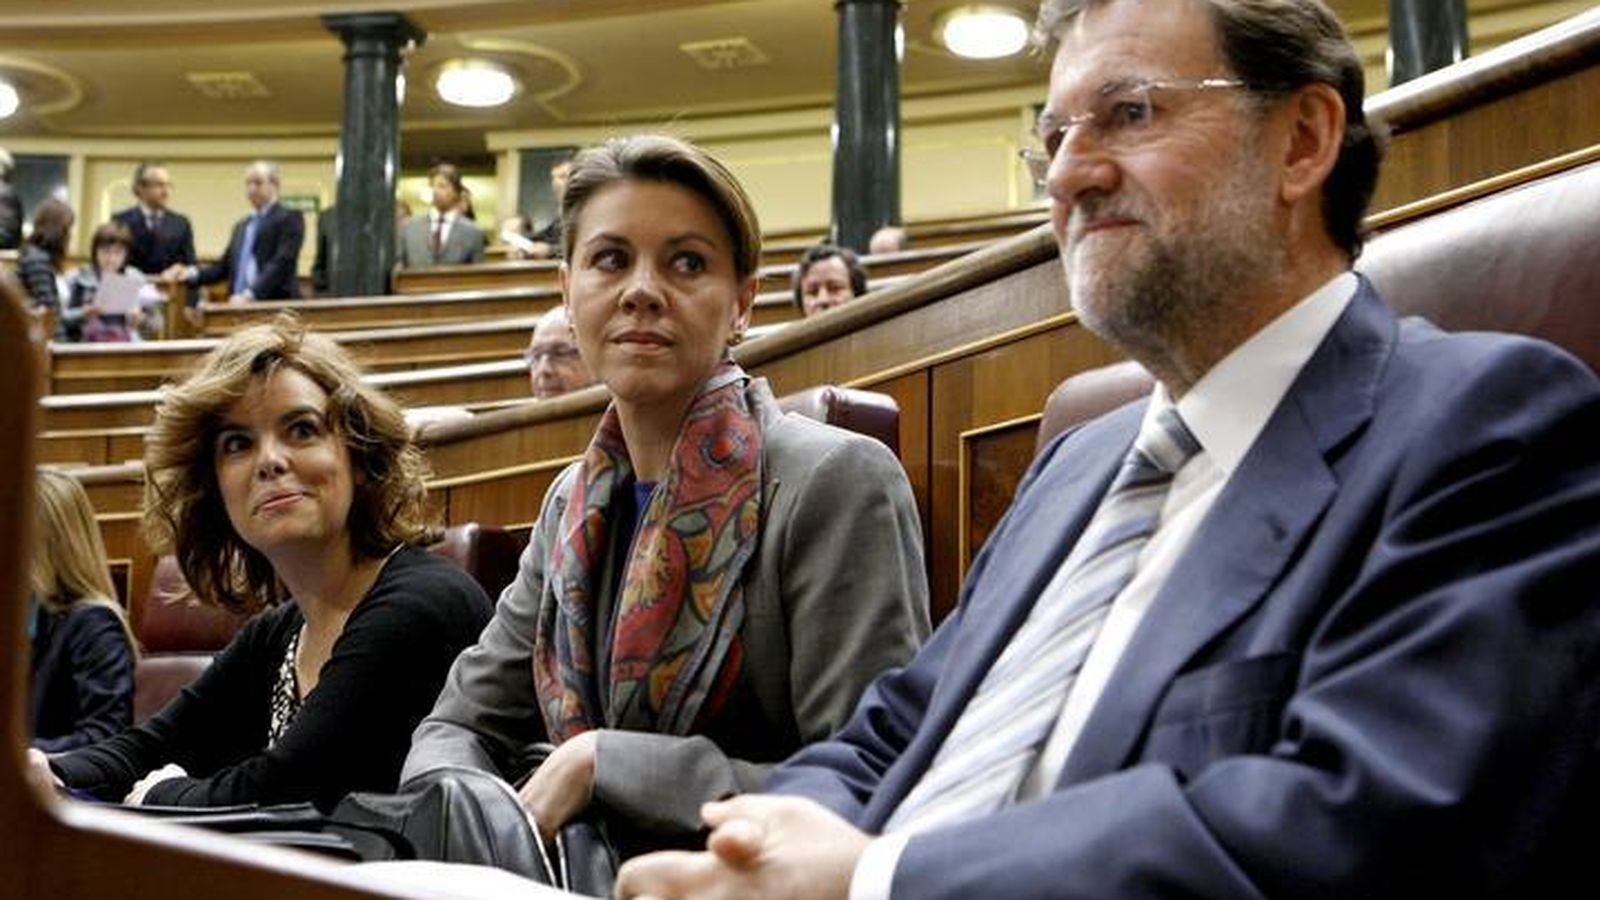 Foto: Las ministras Soraya Sáenz de Santamaría y María Dolores de Cospedal, junto al presidente Mariano Rajoy en el Congreso de los Diputados. (EFE)